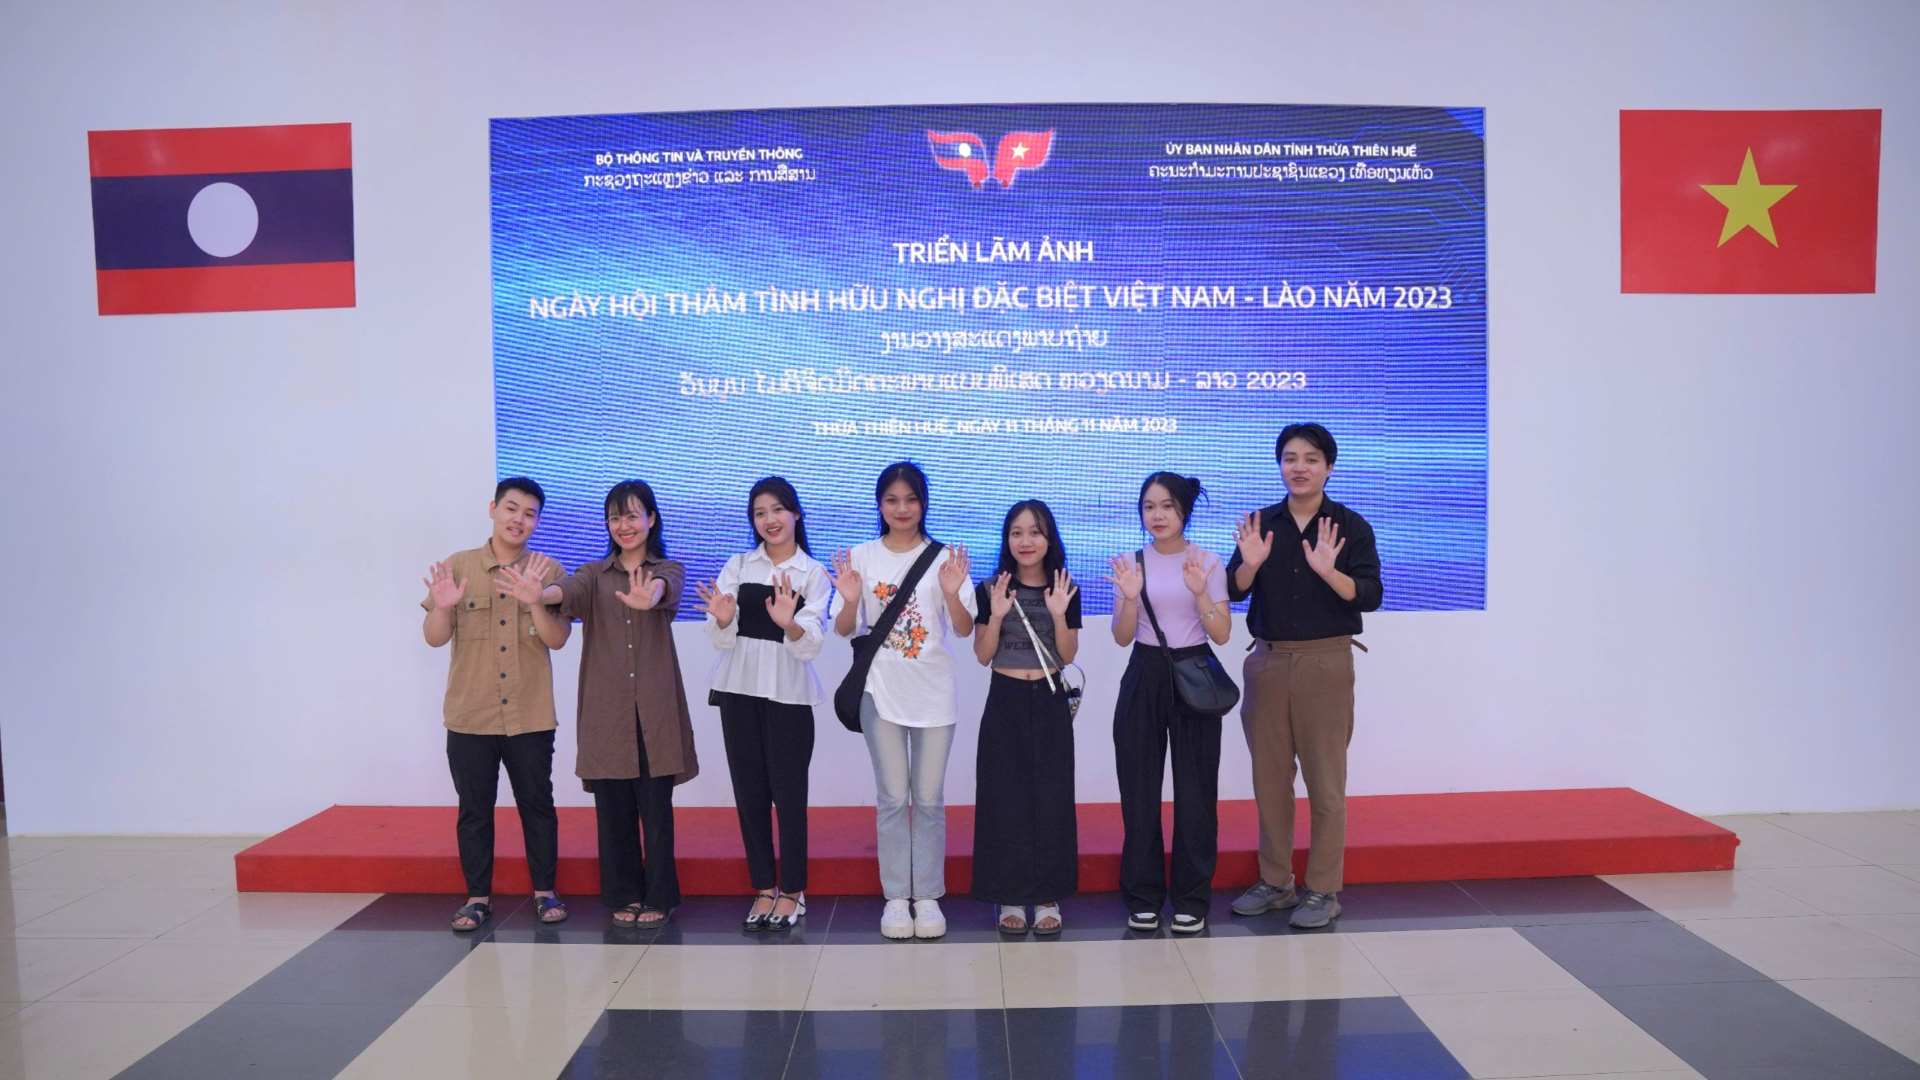 Khai mạc từ ngày 11.11 và kéo dài đến ngày 15.11, ngày hội diễn ra với chuỗi các hoạt động như: Triển lãm ảnh, Hội chợ – Triển lãm, Tọa đàm khoa học và Đêm giao lưu nghệ thuật Việt Nam – Lào. 